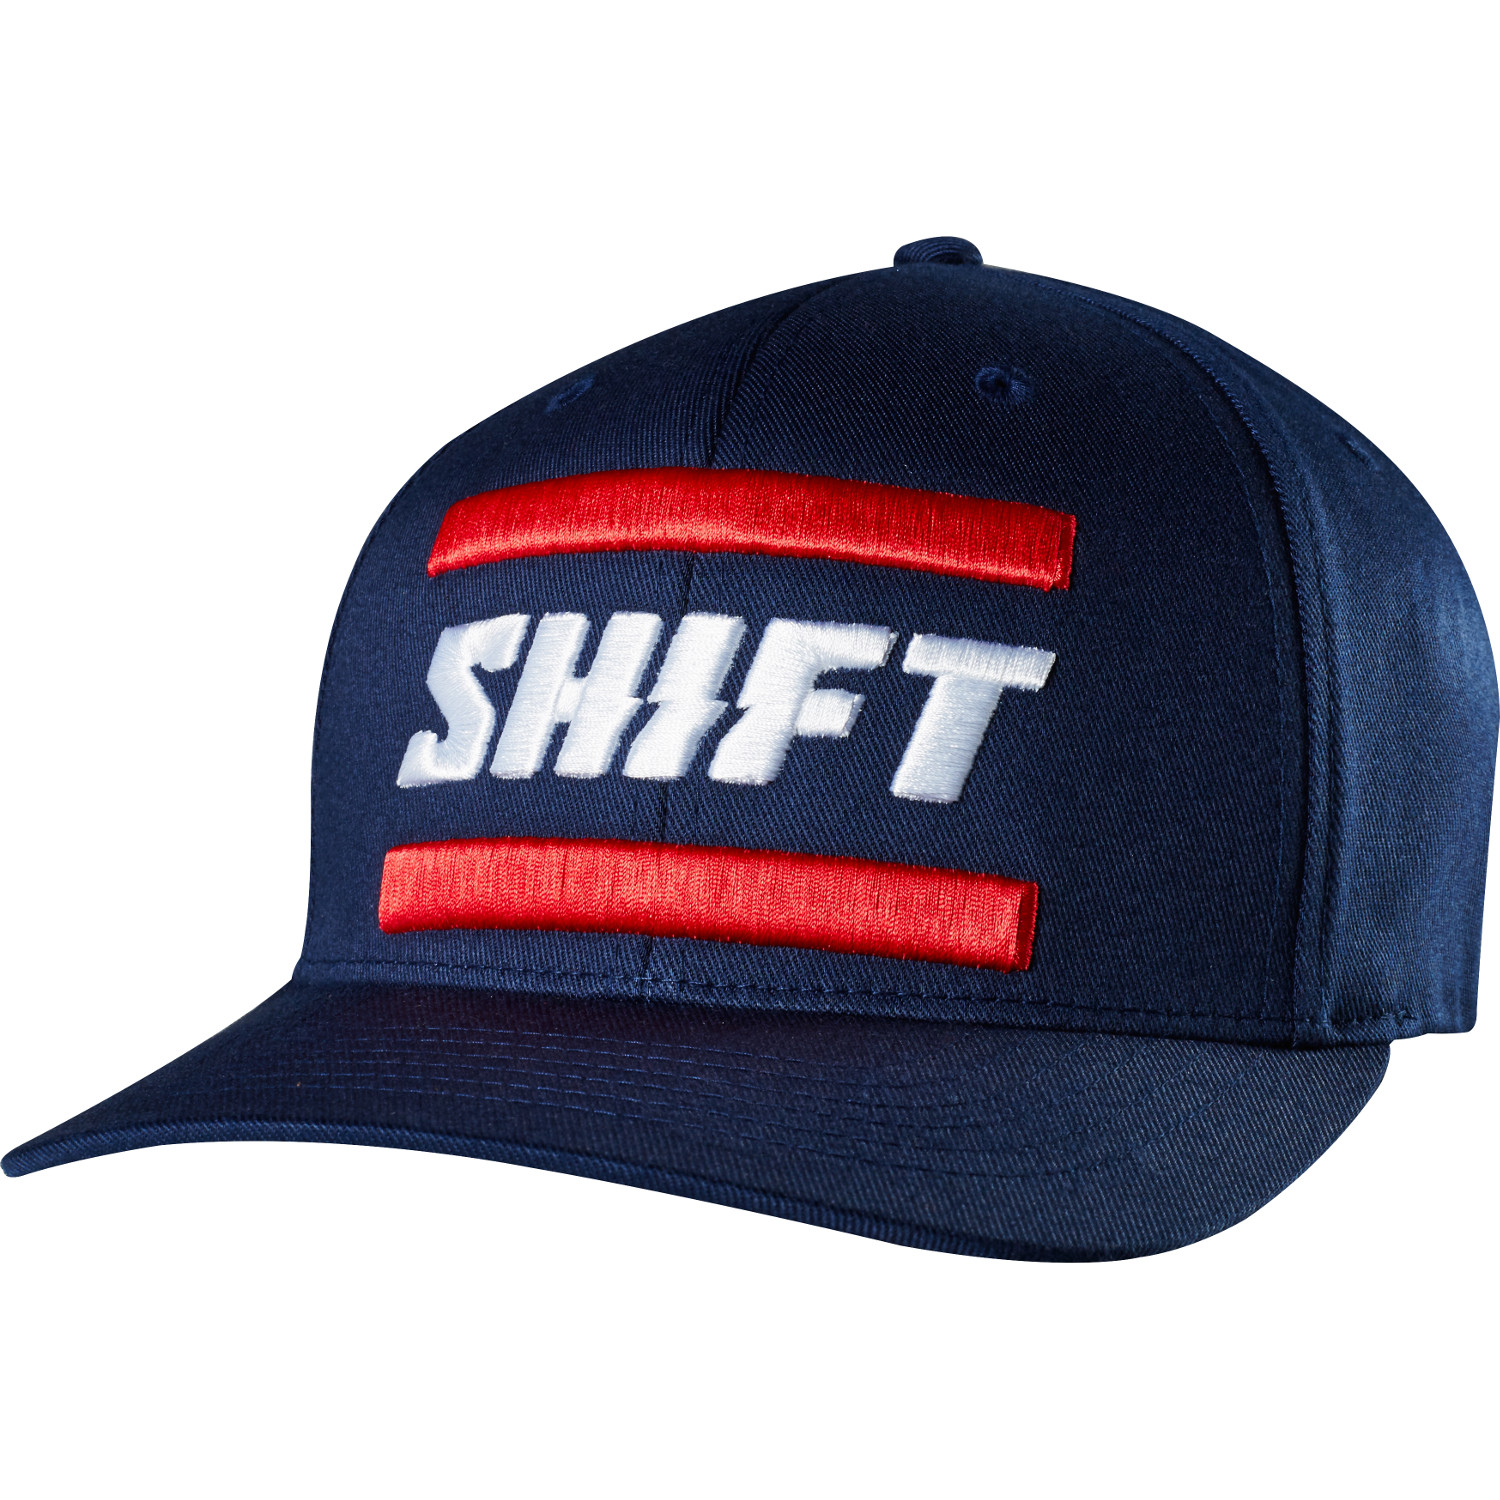 Shift Flexfit Cap 3lack Label Navy